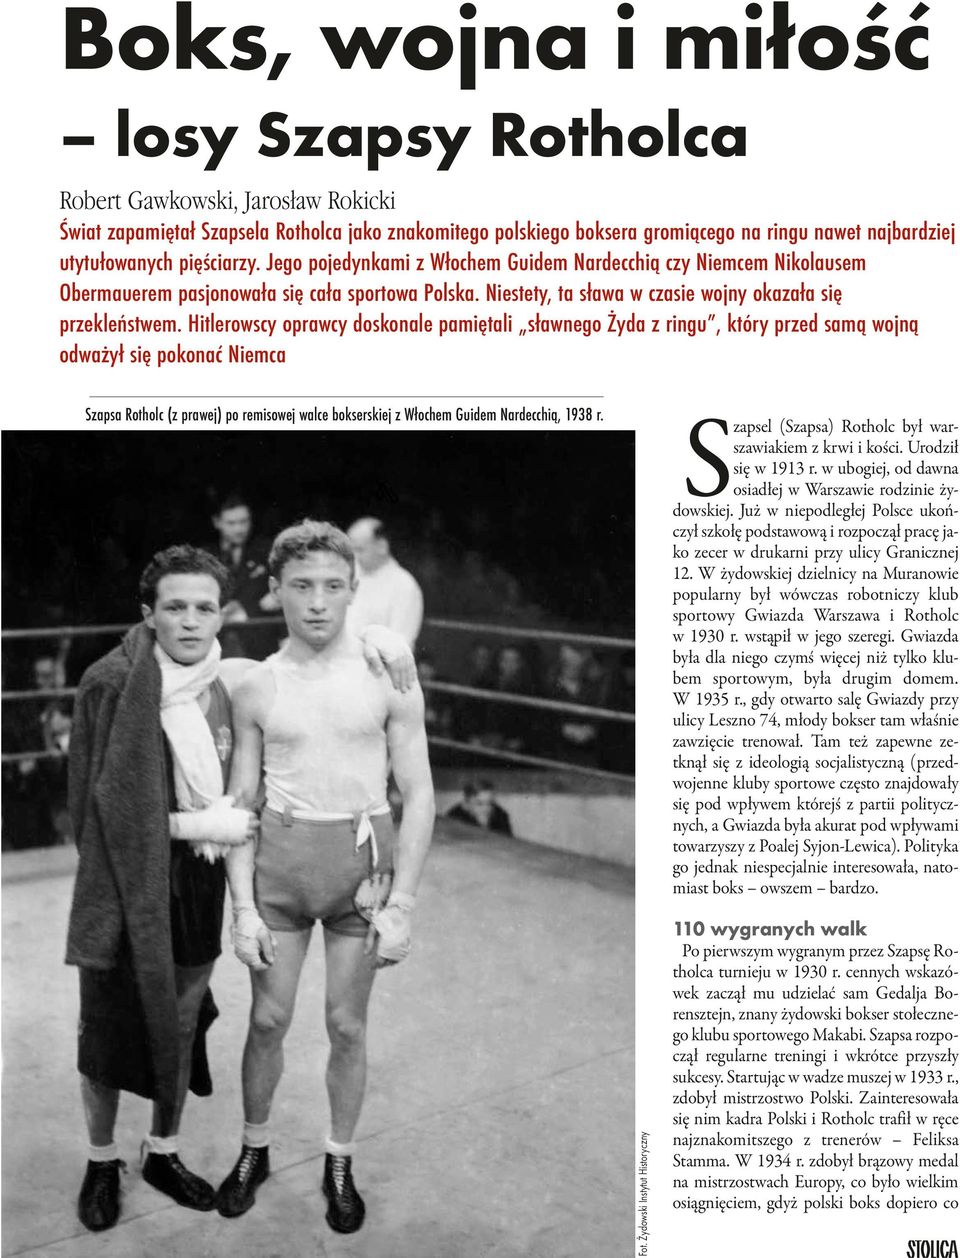 Hitlerowscy oprawcy doskonale pamiętali sławnego Żyda z ringu, który przed samą wojną odważył się pokonać Niemca 18 Szapsa Rotholc (z prawej) po remisowej walce bokserskiej z Włochem Guidem